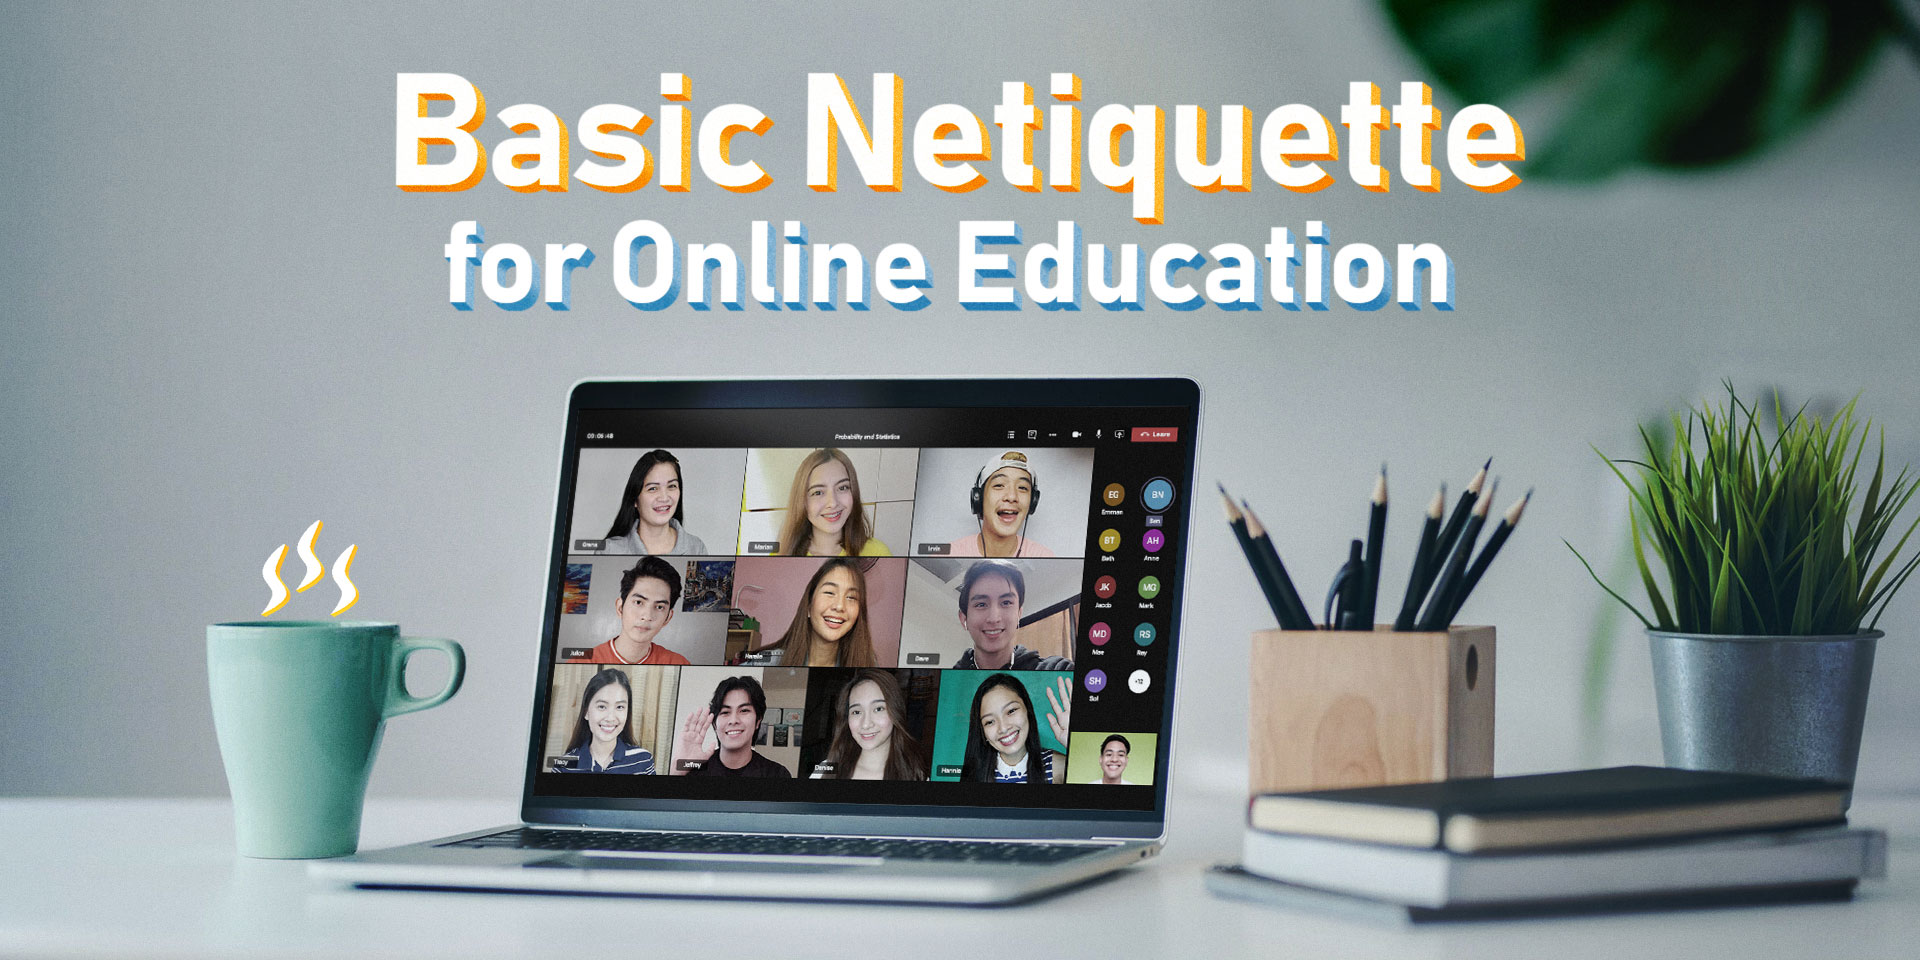 Basic Netiquette for Online Education